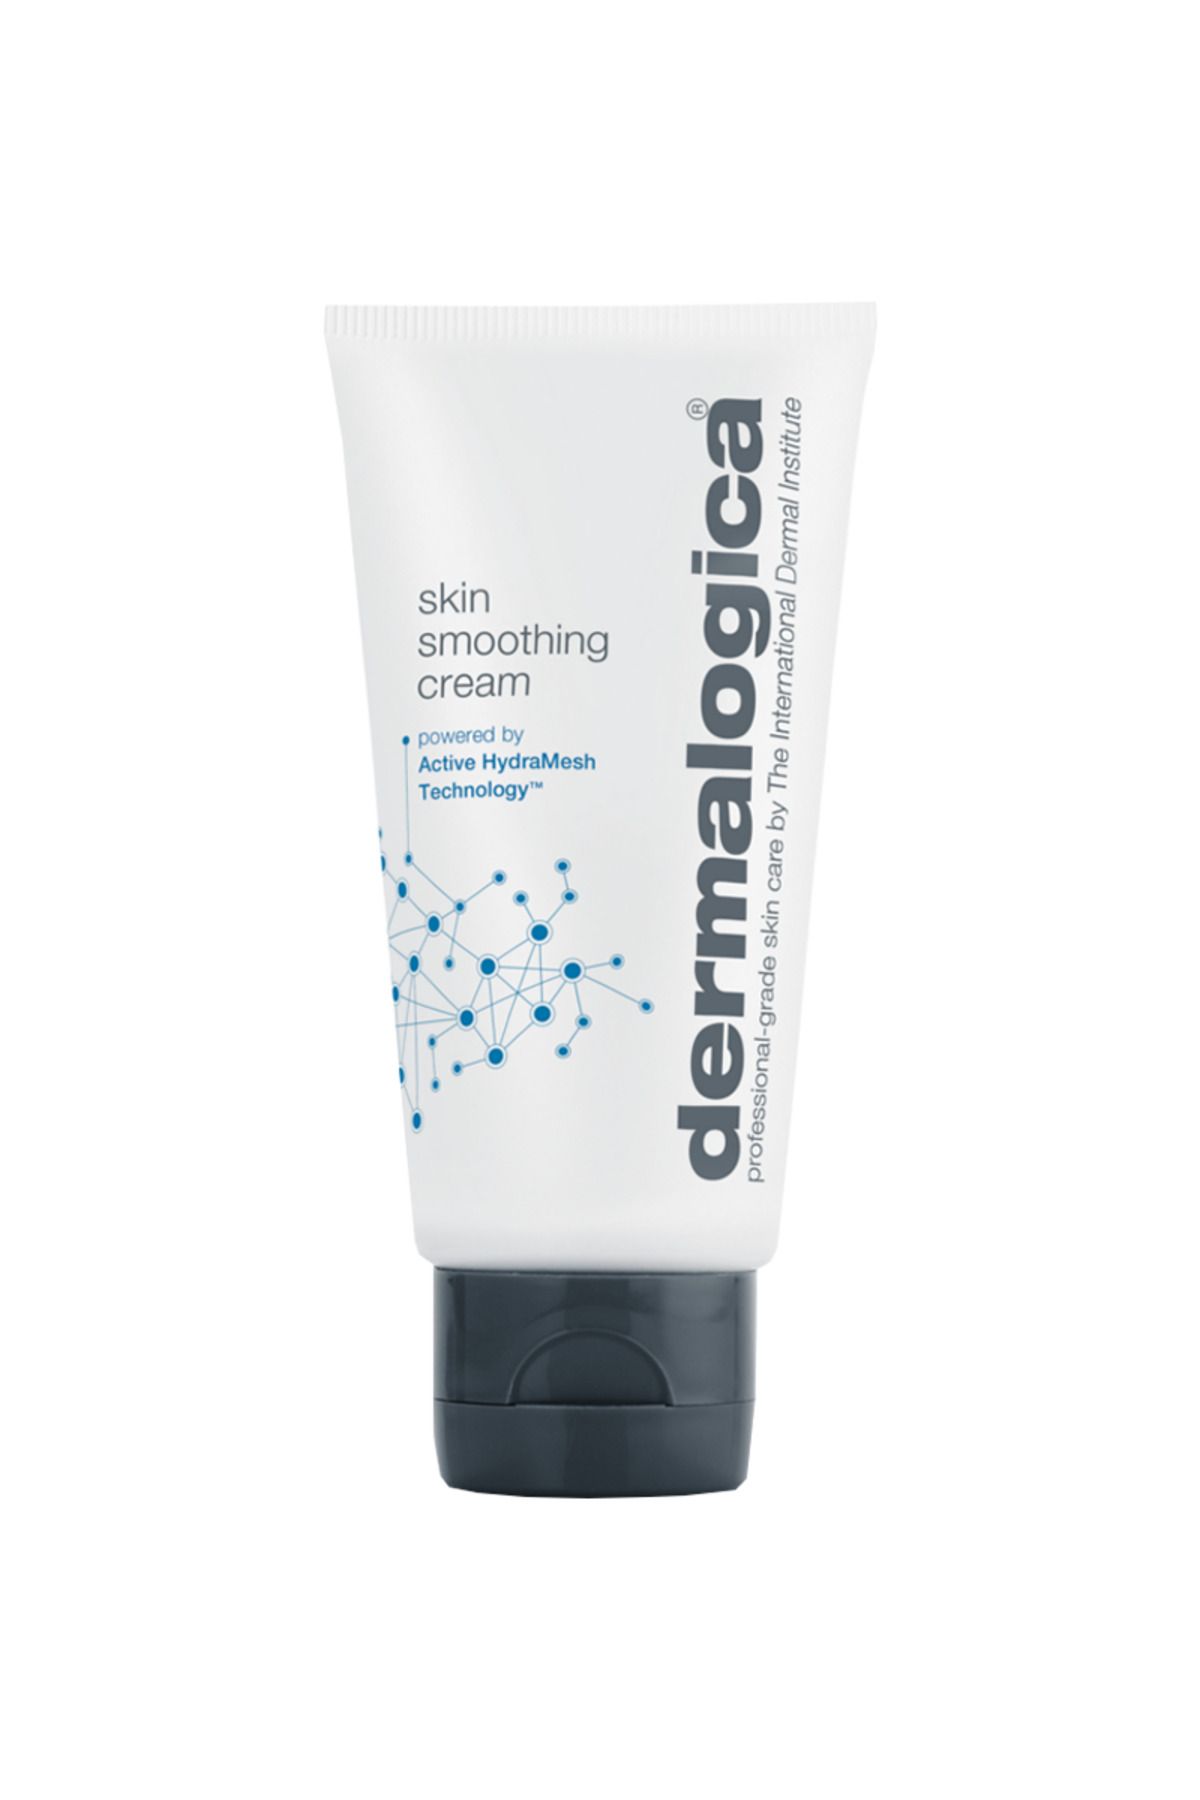 Dermalogica Skin Smoothing Cream Kuru Ciltler İçin Orta Ağırlıkta Nemlendirici Krem 100ml